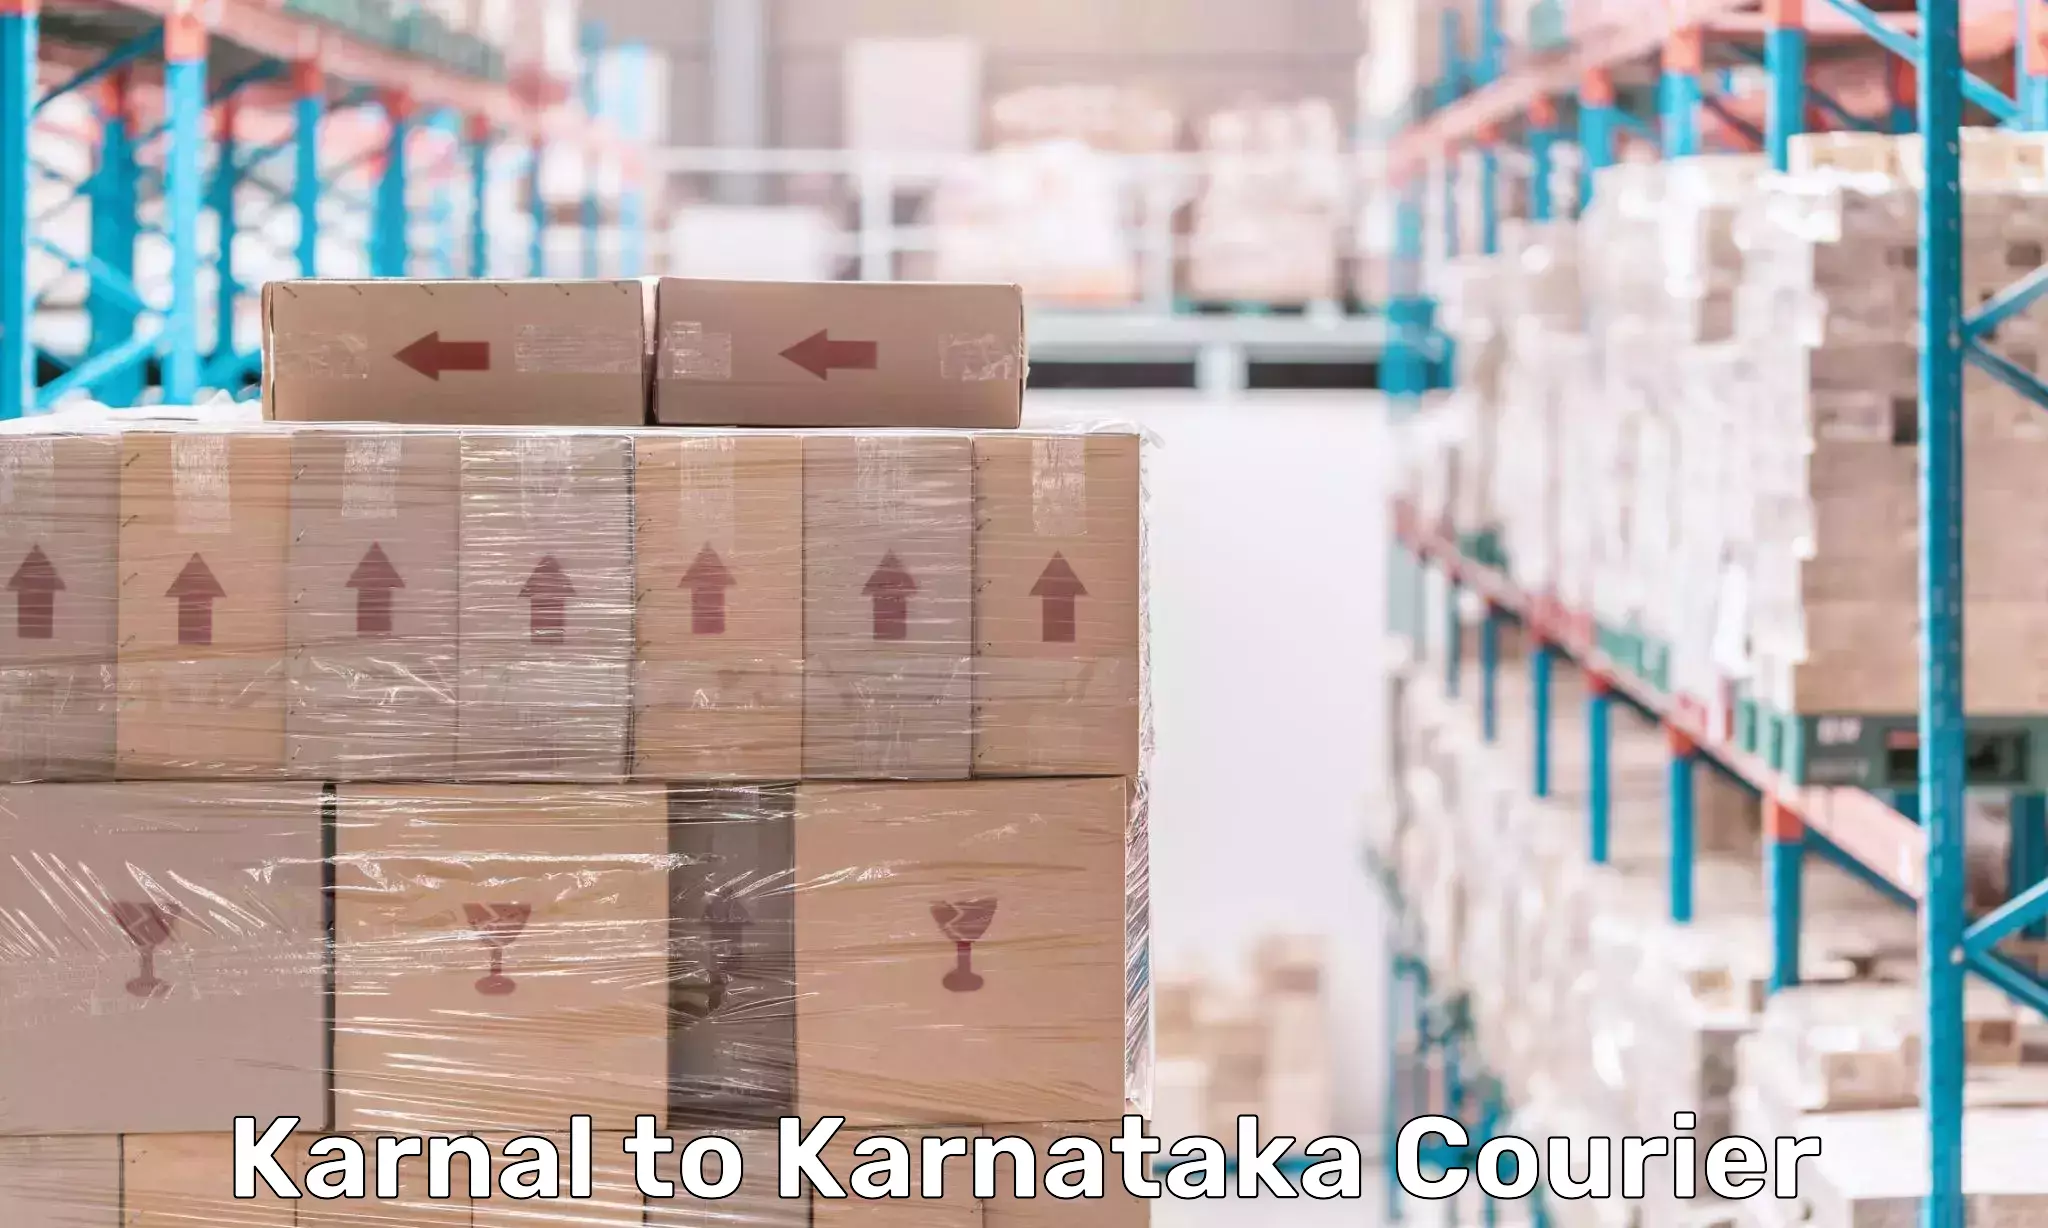 Professional parcel services Karnal to Basavakalyan